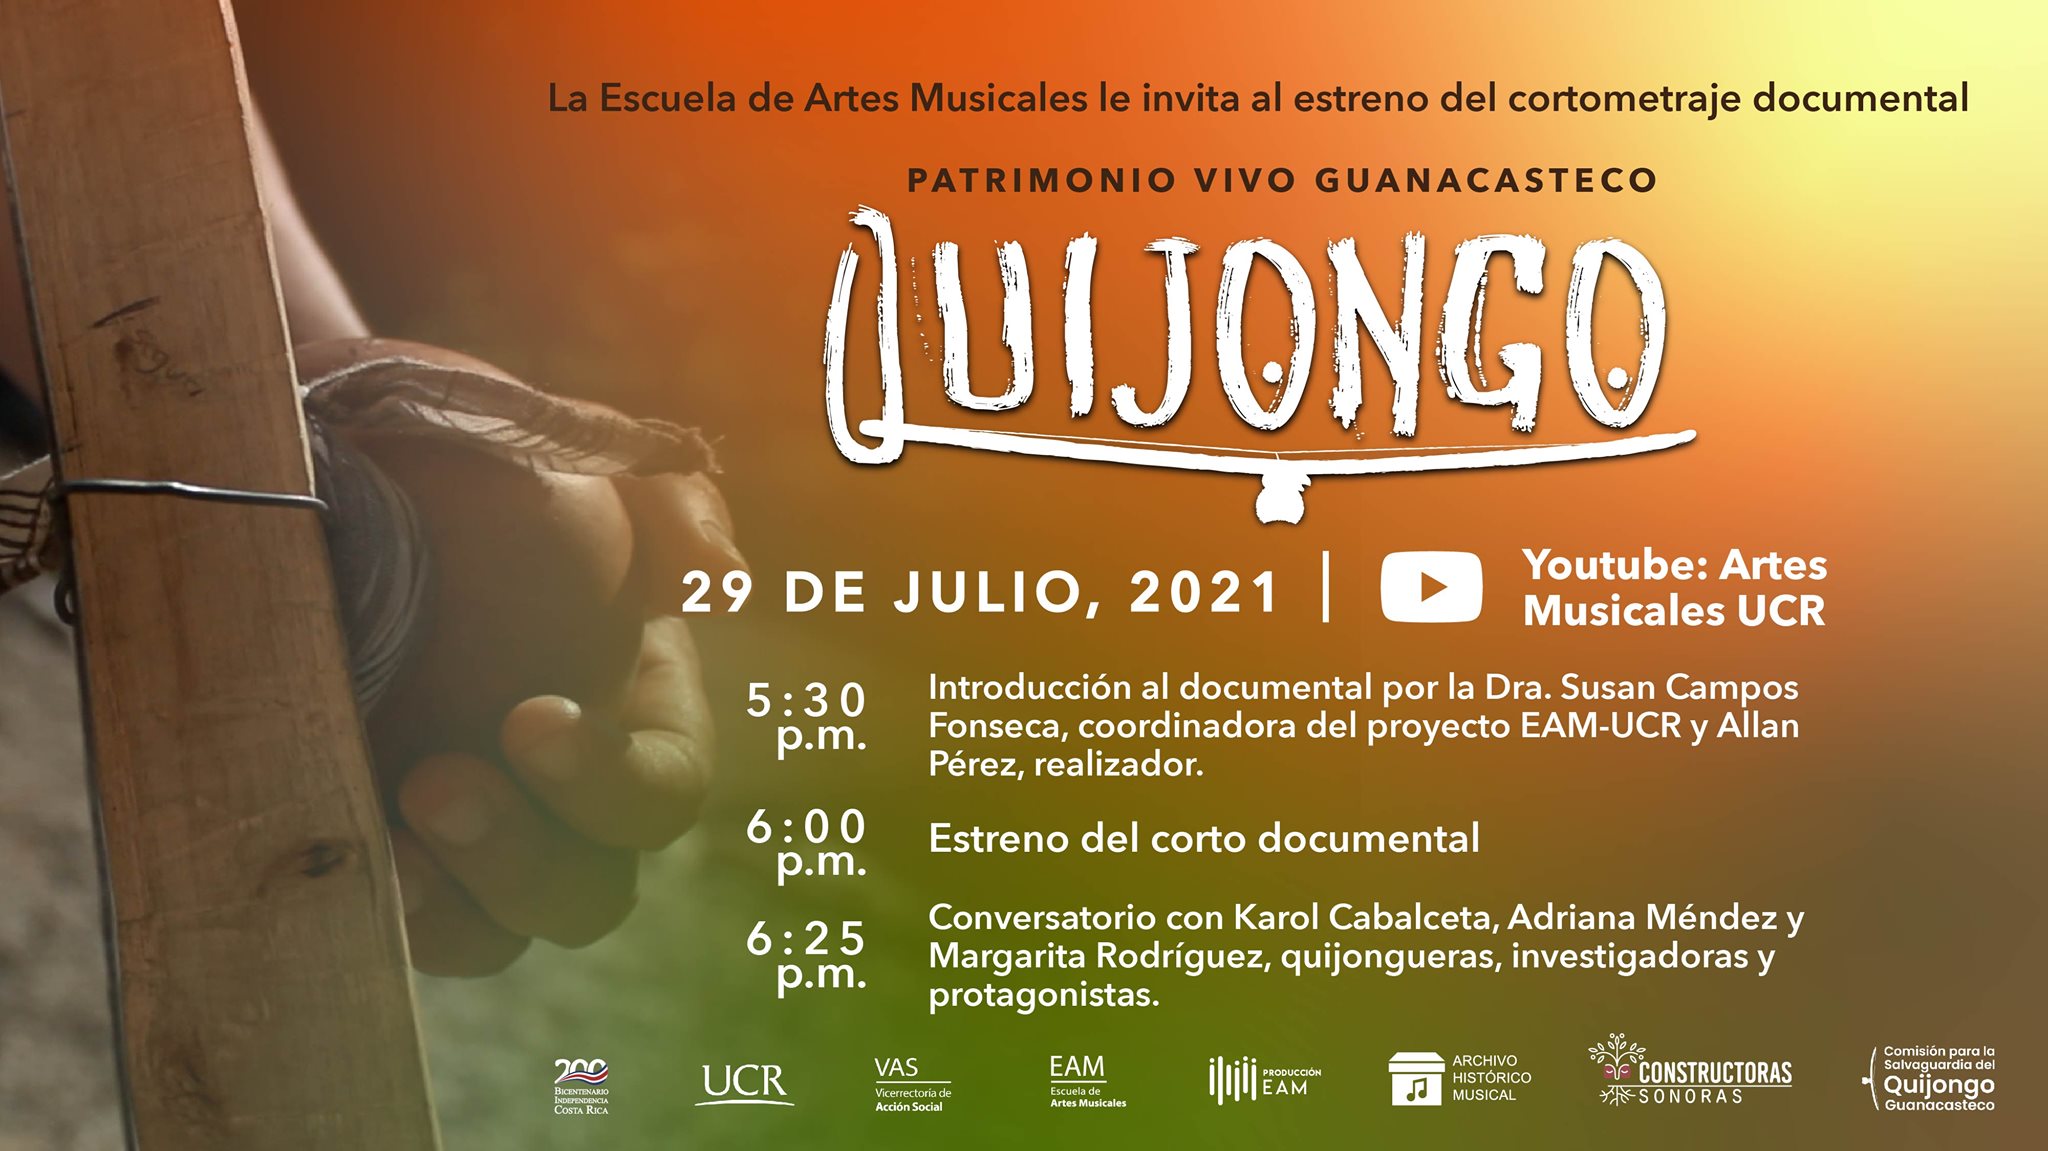 Quijongo, Patrimonio Vivo Guanacasteco (Estreno cortometraje documental)